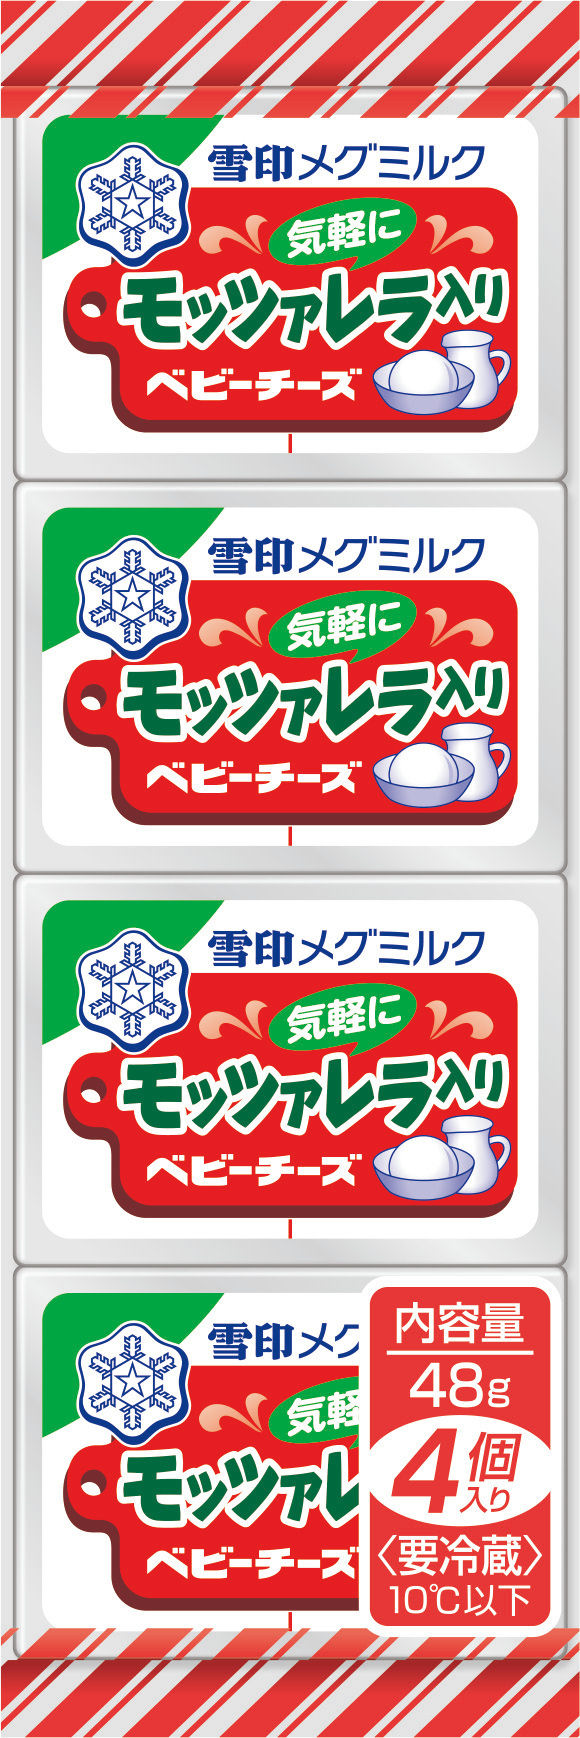 【雪印メグミルク】『濃厚ミルク仕立て フロマージュミルク』 200g

2019年 3月5日（火）より全国にて新発売